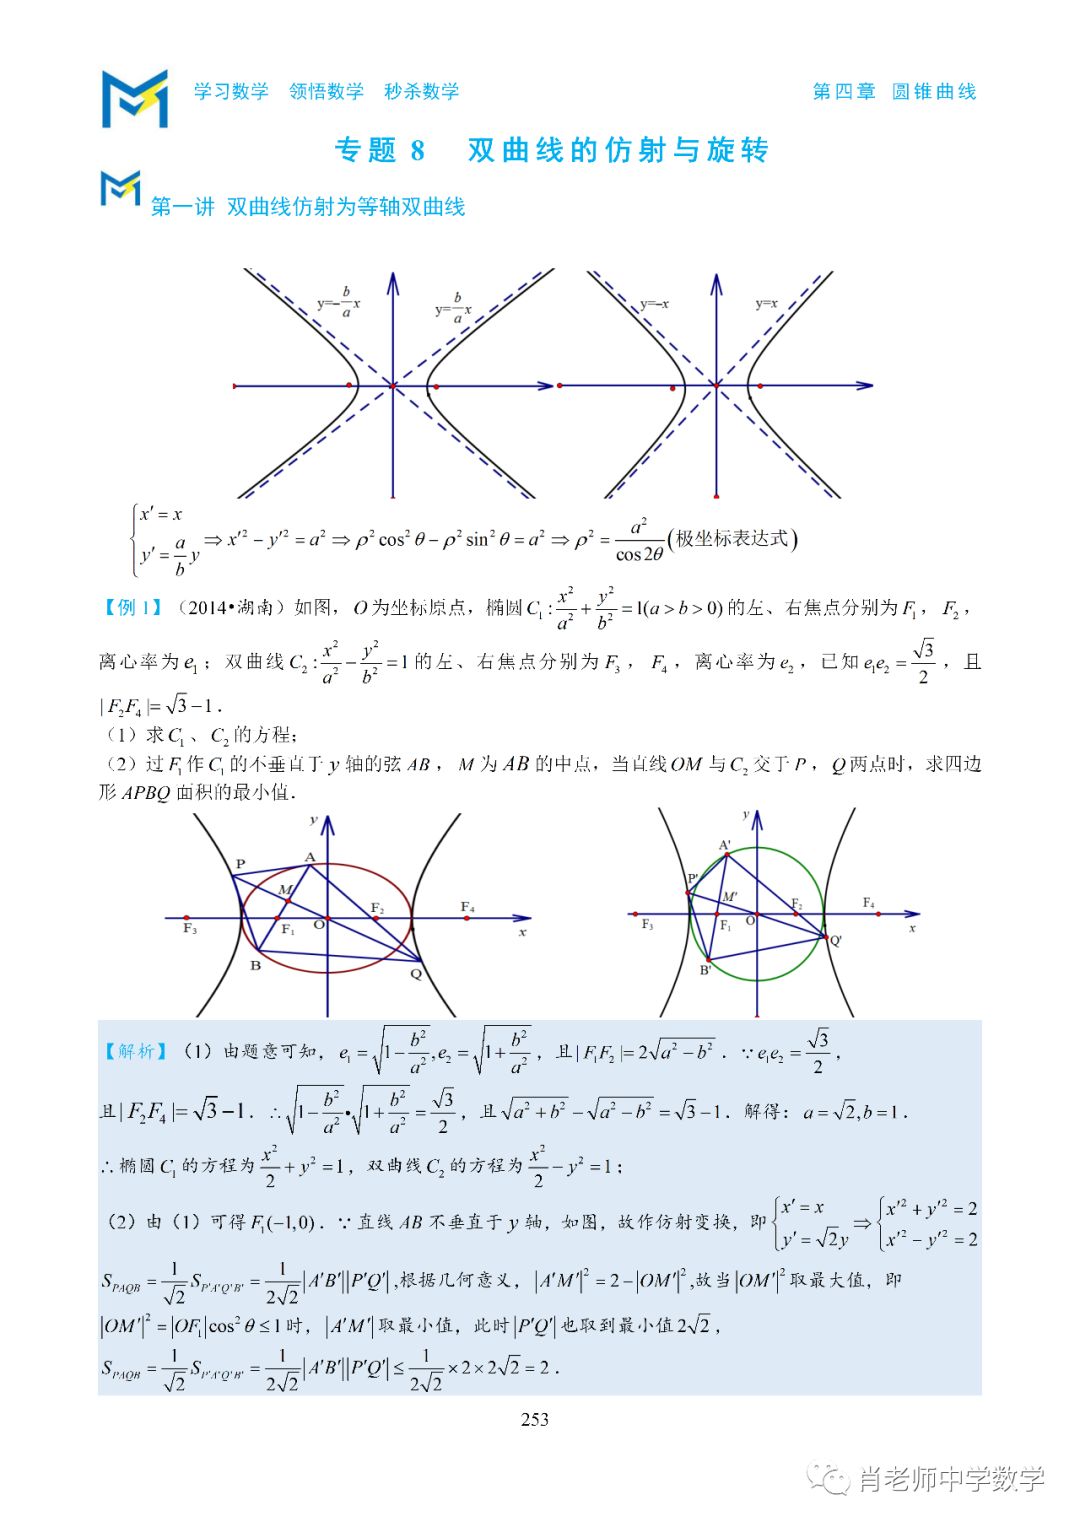 双曲线的仿射与旋转 肖老师中学数学 微信公众号文章阅读 Wemp